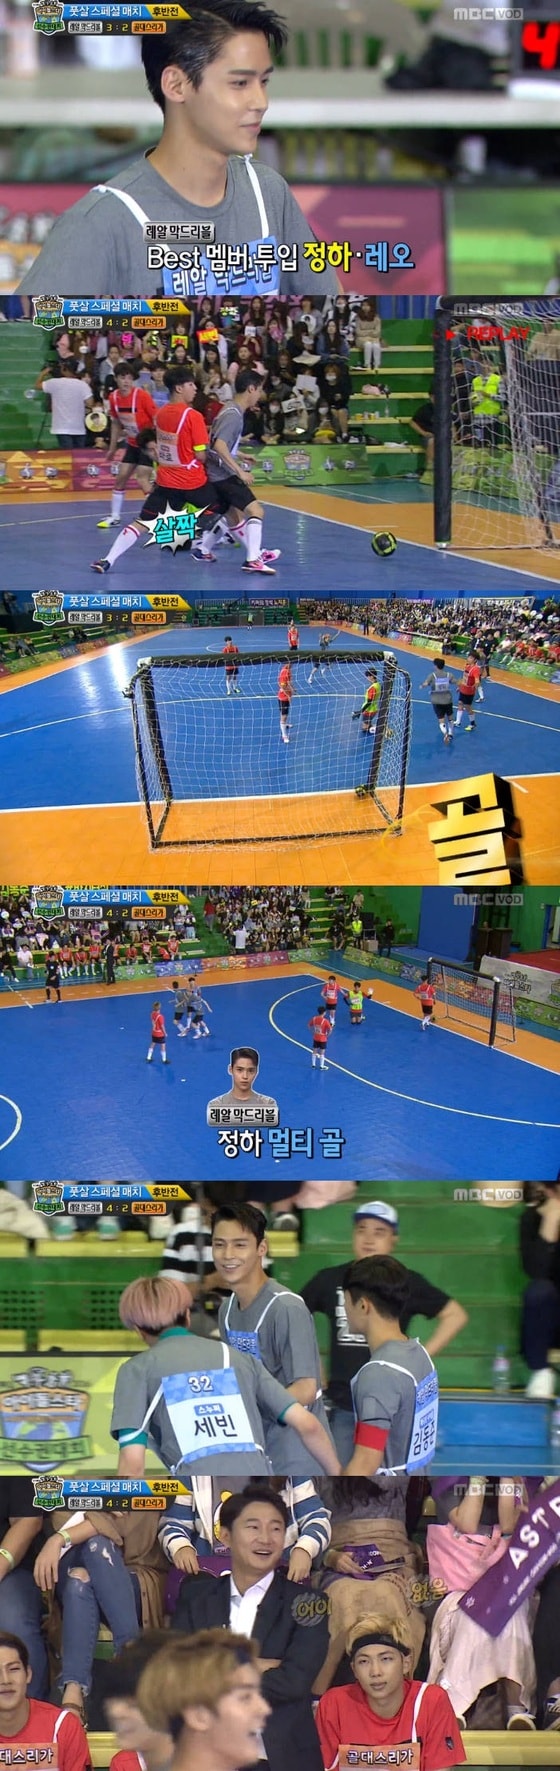 비트윈 정하가 풋살 경기에서 활약했다. © News1star / MBC '아육대' 캡처